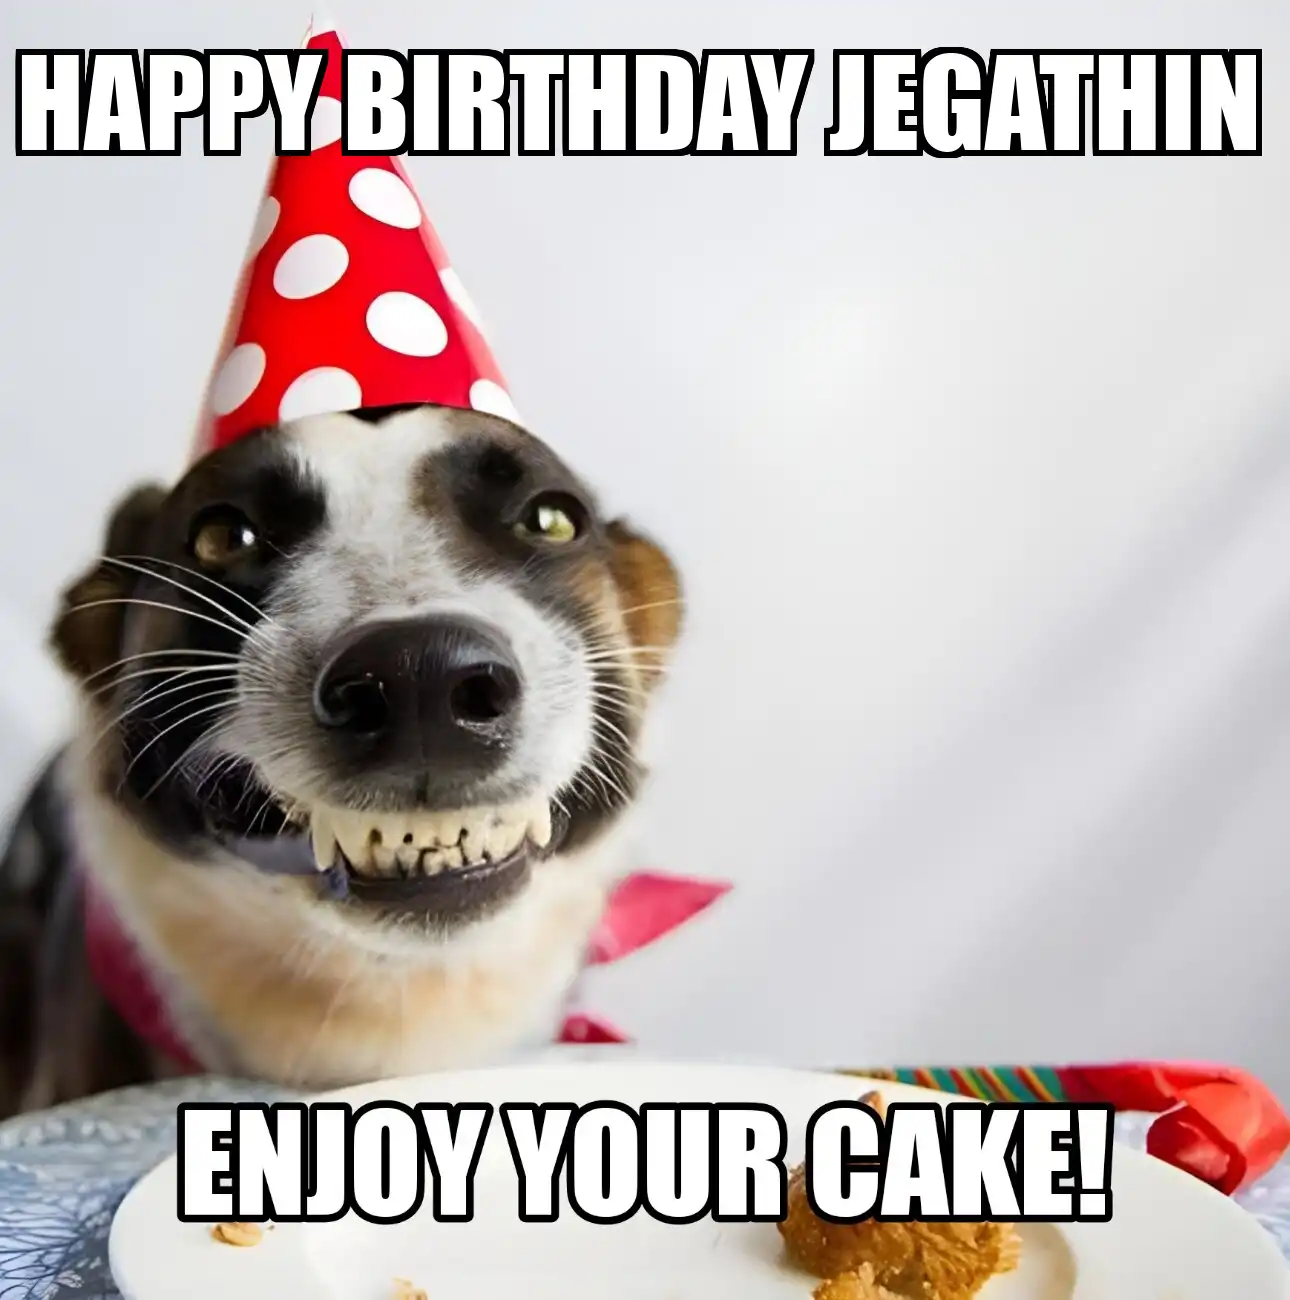 Happy Birthday Jegathin Enjoy Your Cake Dog Meme